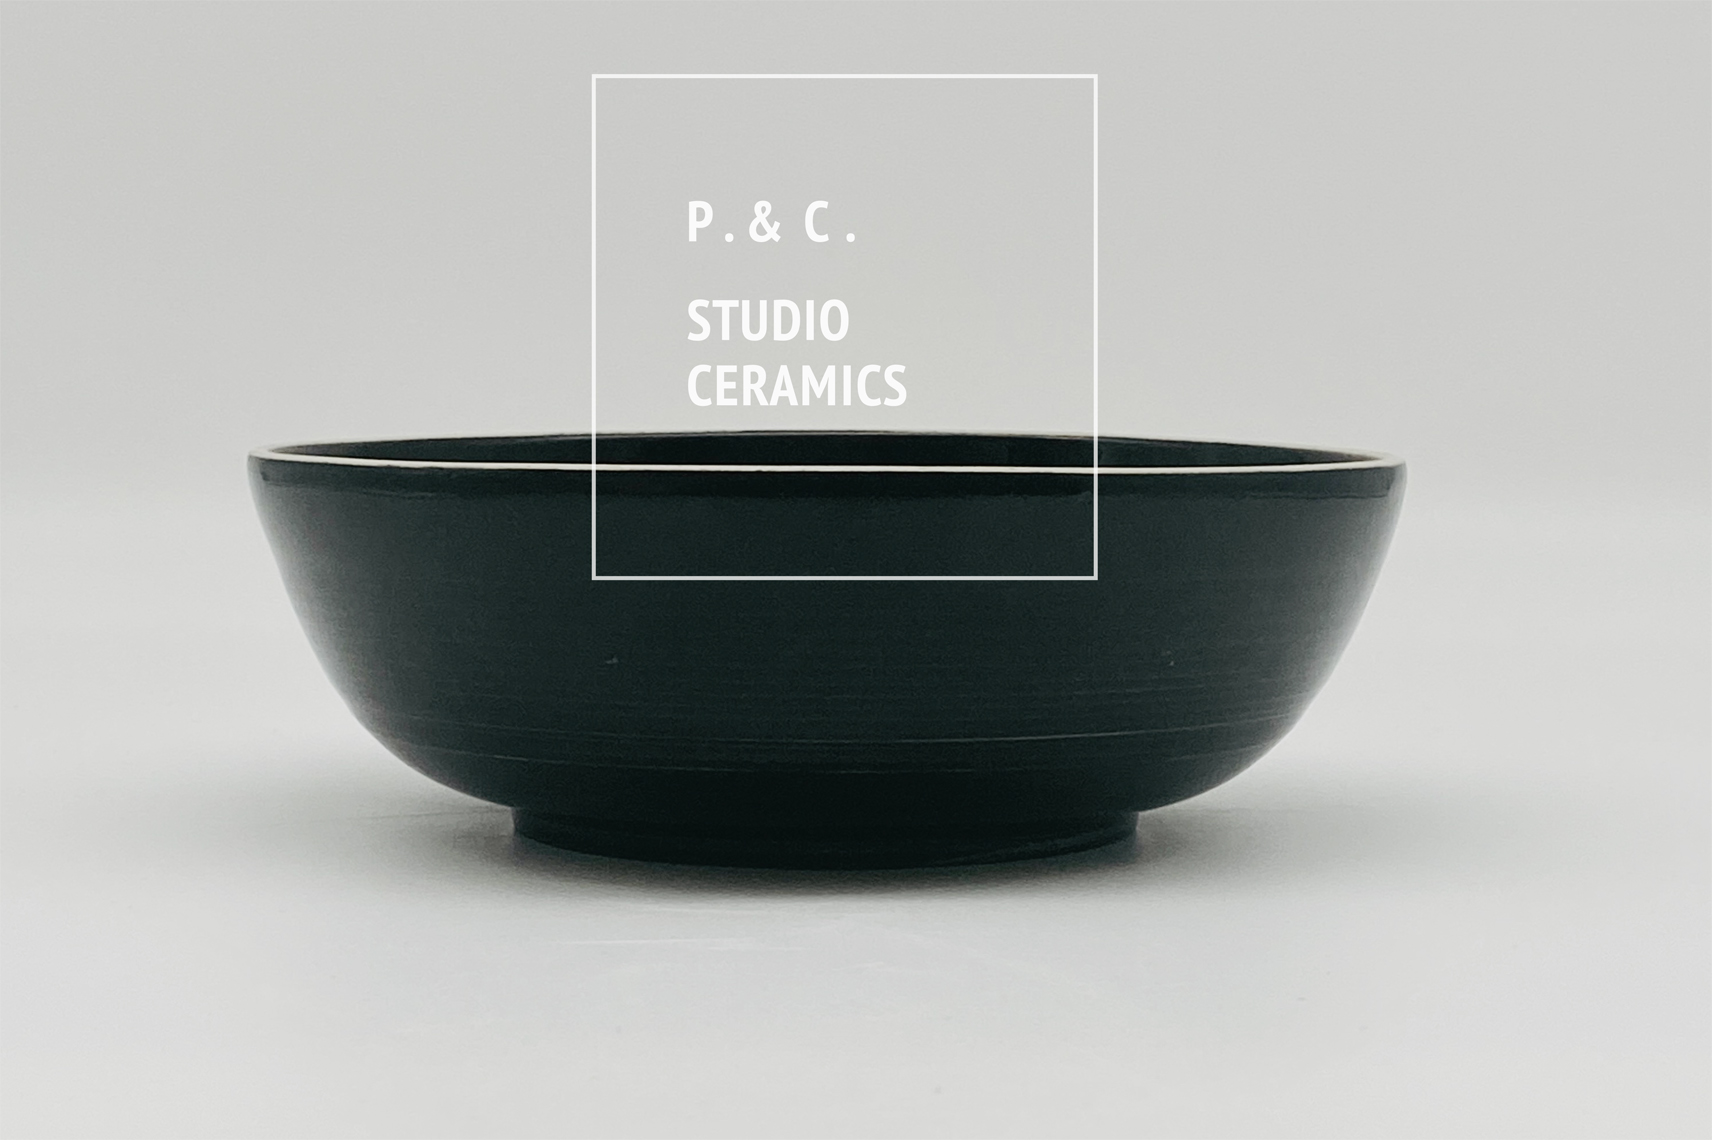 Darstellung einer Keramik von P. & C. STUDIO CERAMICS und dem Logo.